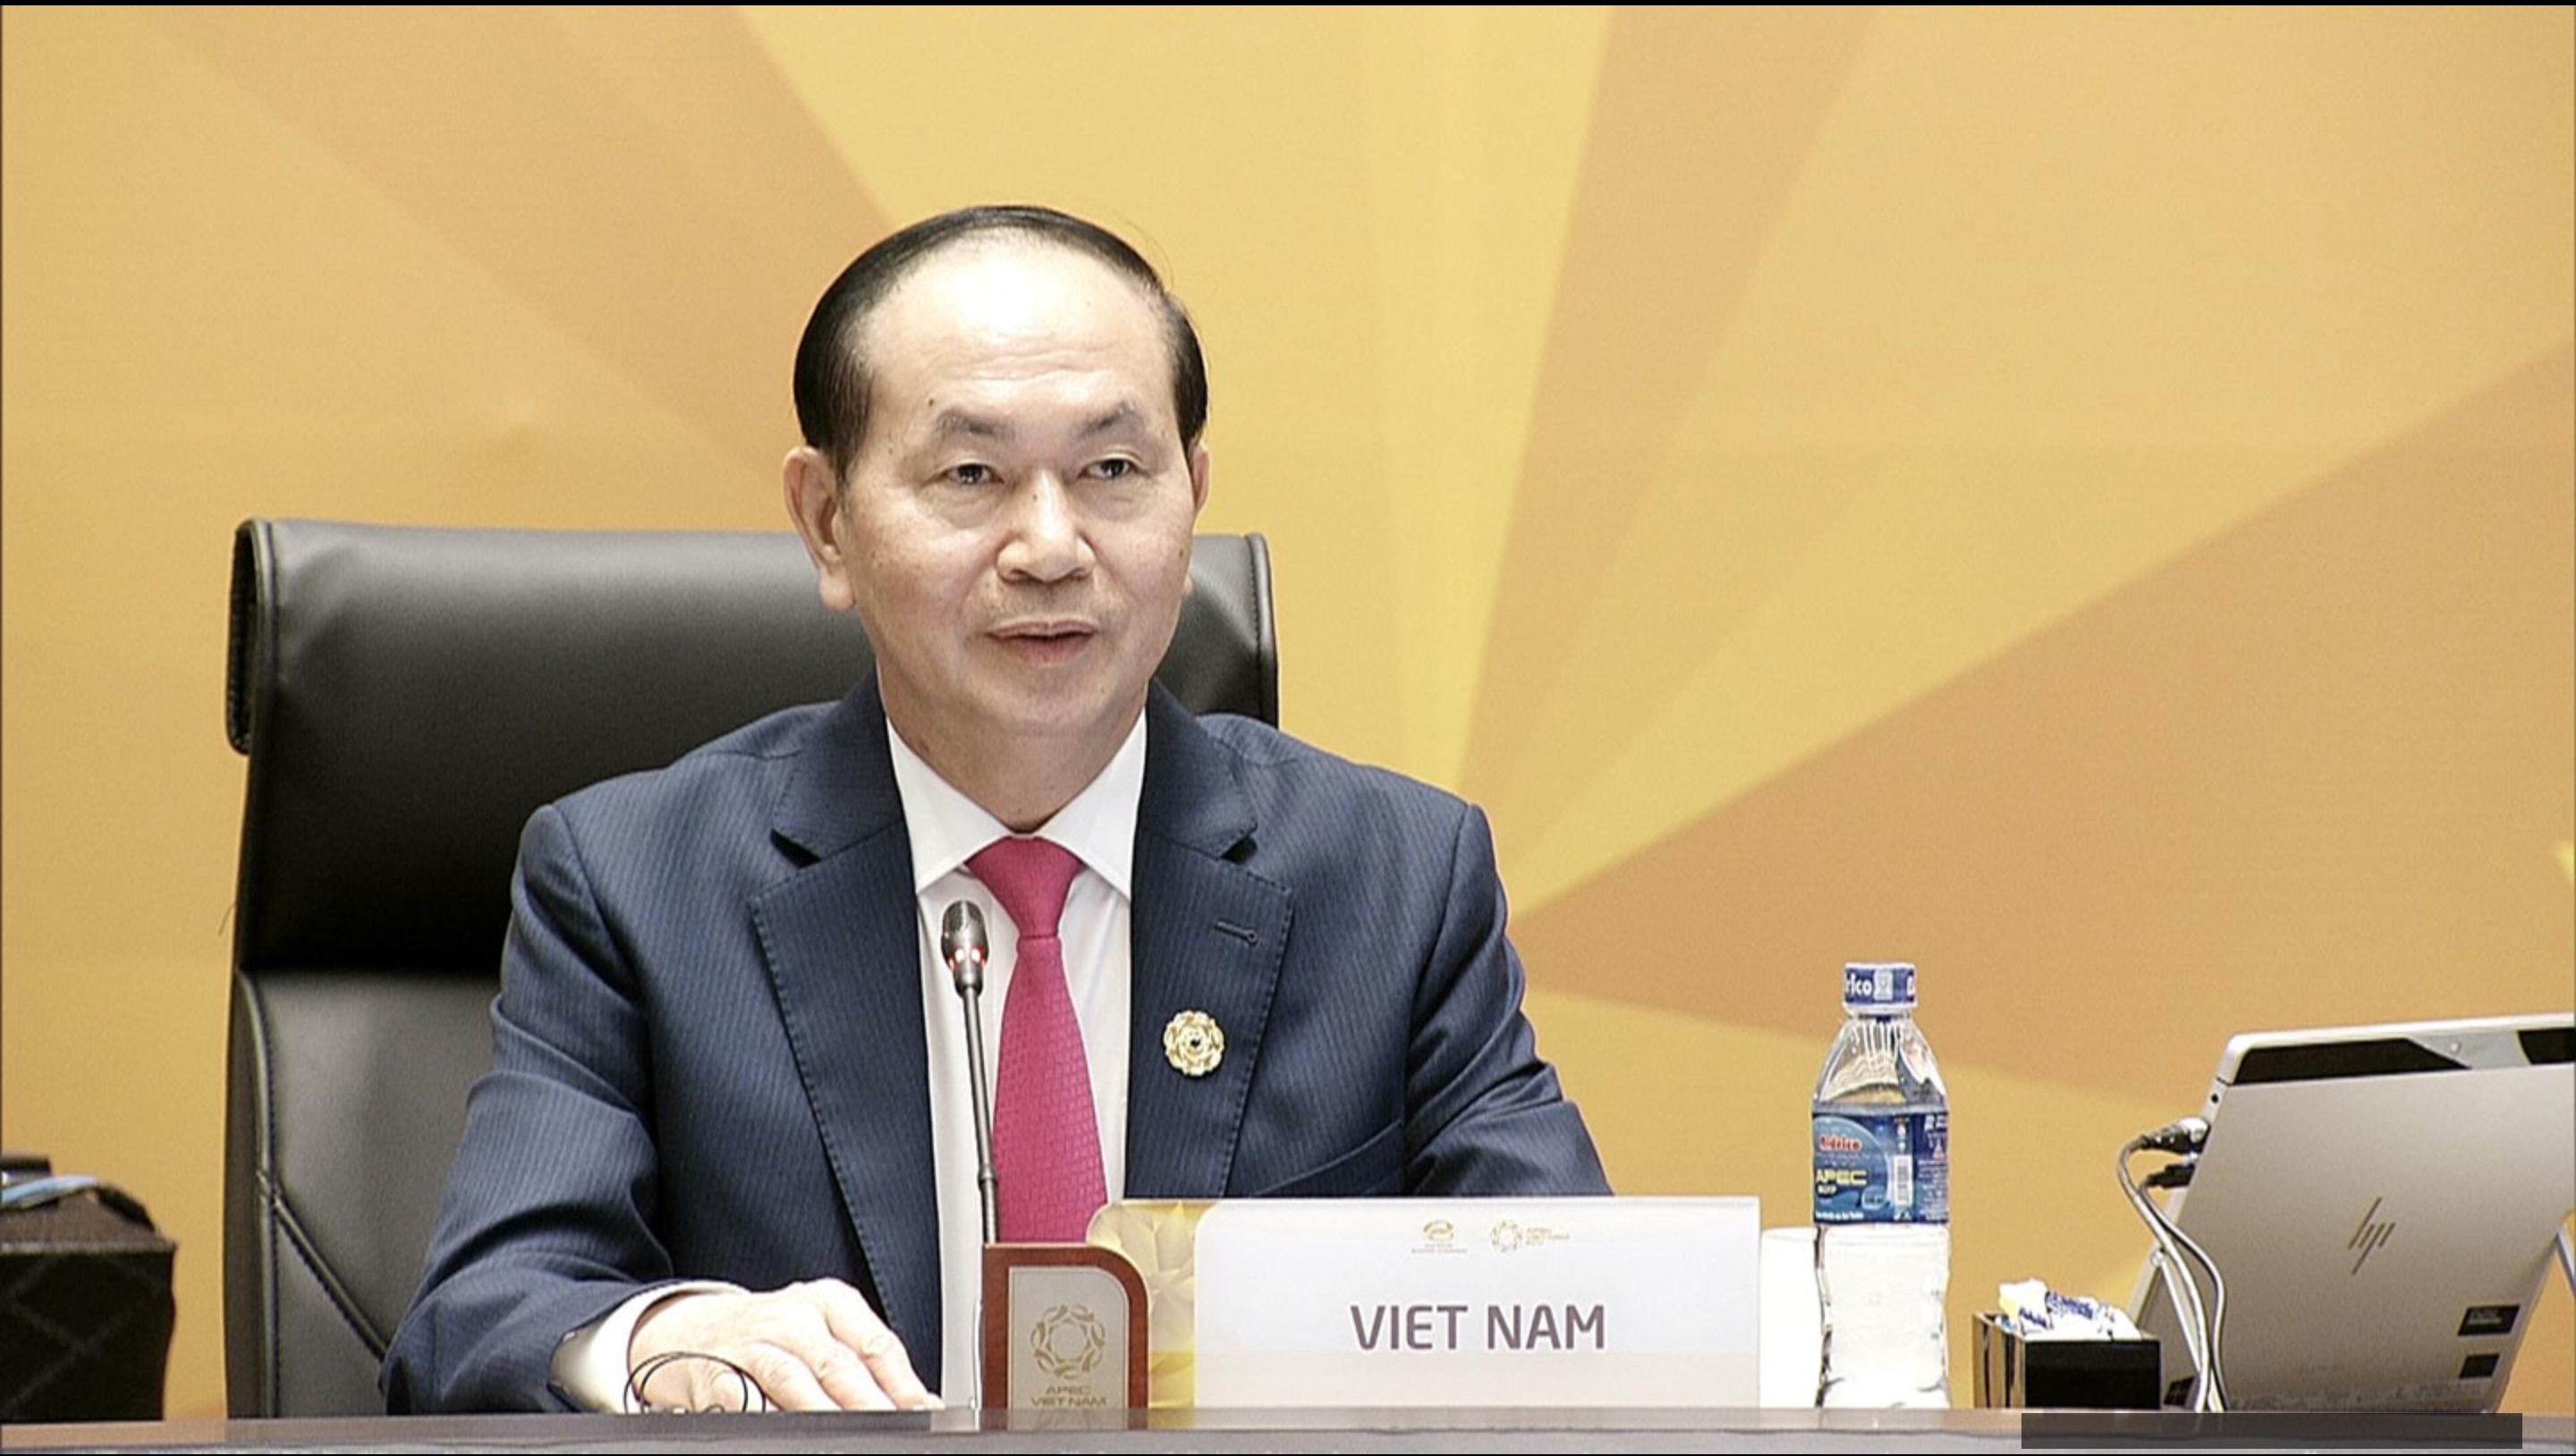 Chủ tịch nước Trần Đại Quang chủ trì Hội nghị lần thứ 25 các nhà lãnh đạo kinh tế APEC